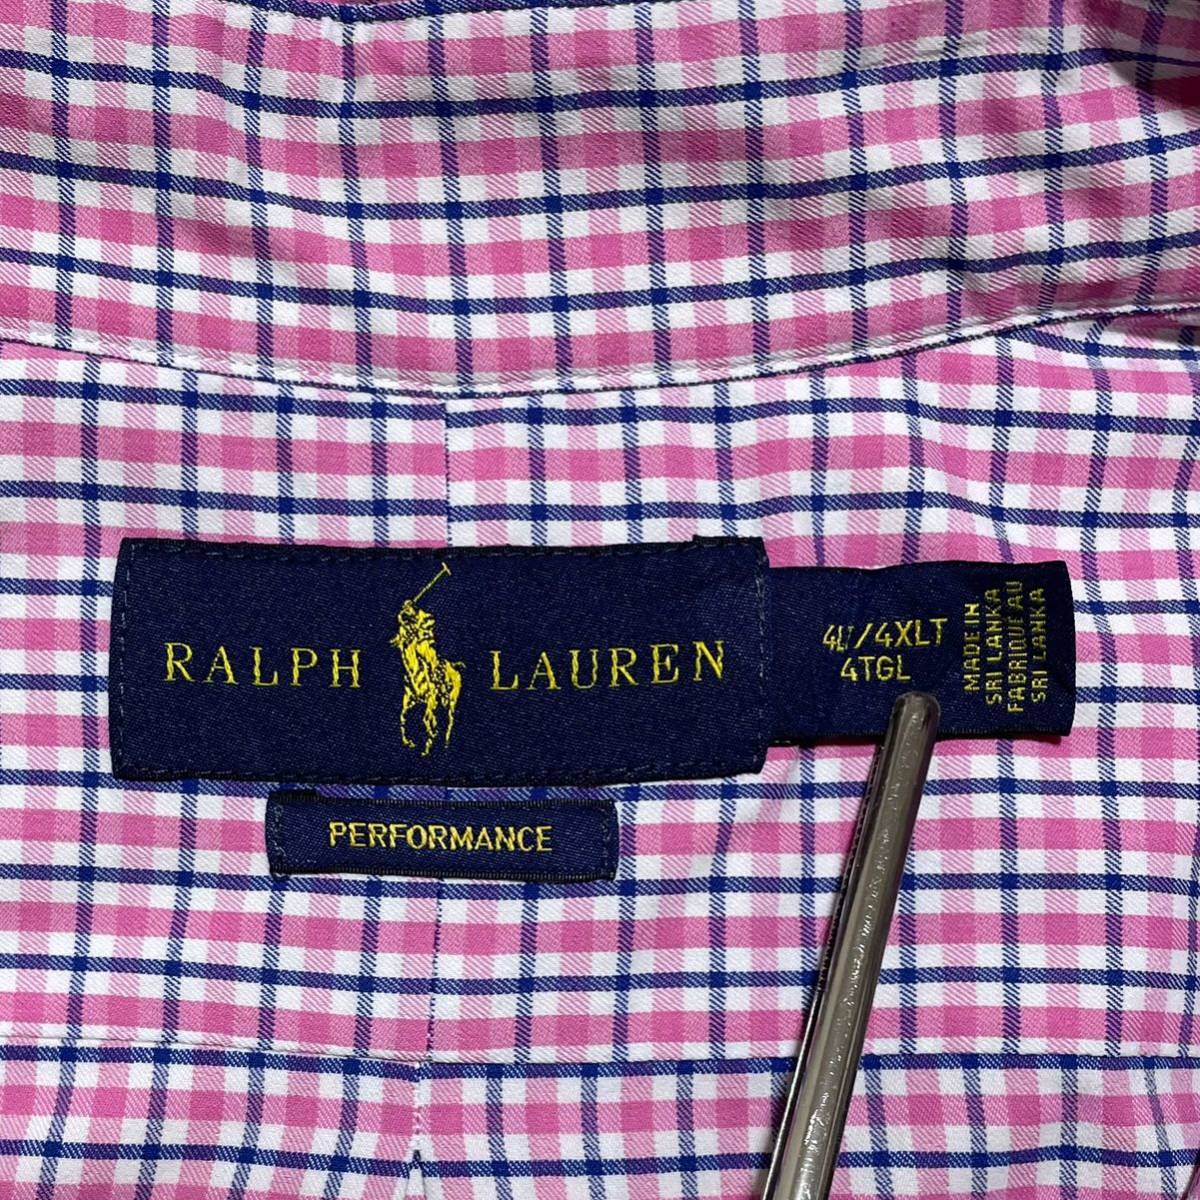 【人気ブランド】RALPH LAUREN ラルフローレン 長袖 BDシャツ ボタンダウンシャツ ビッグサイズ 4XLTサイズ チェック 刺繍ポニー 23-50